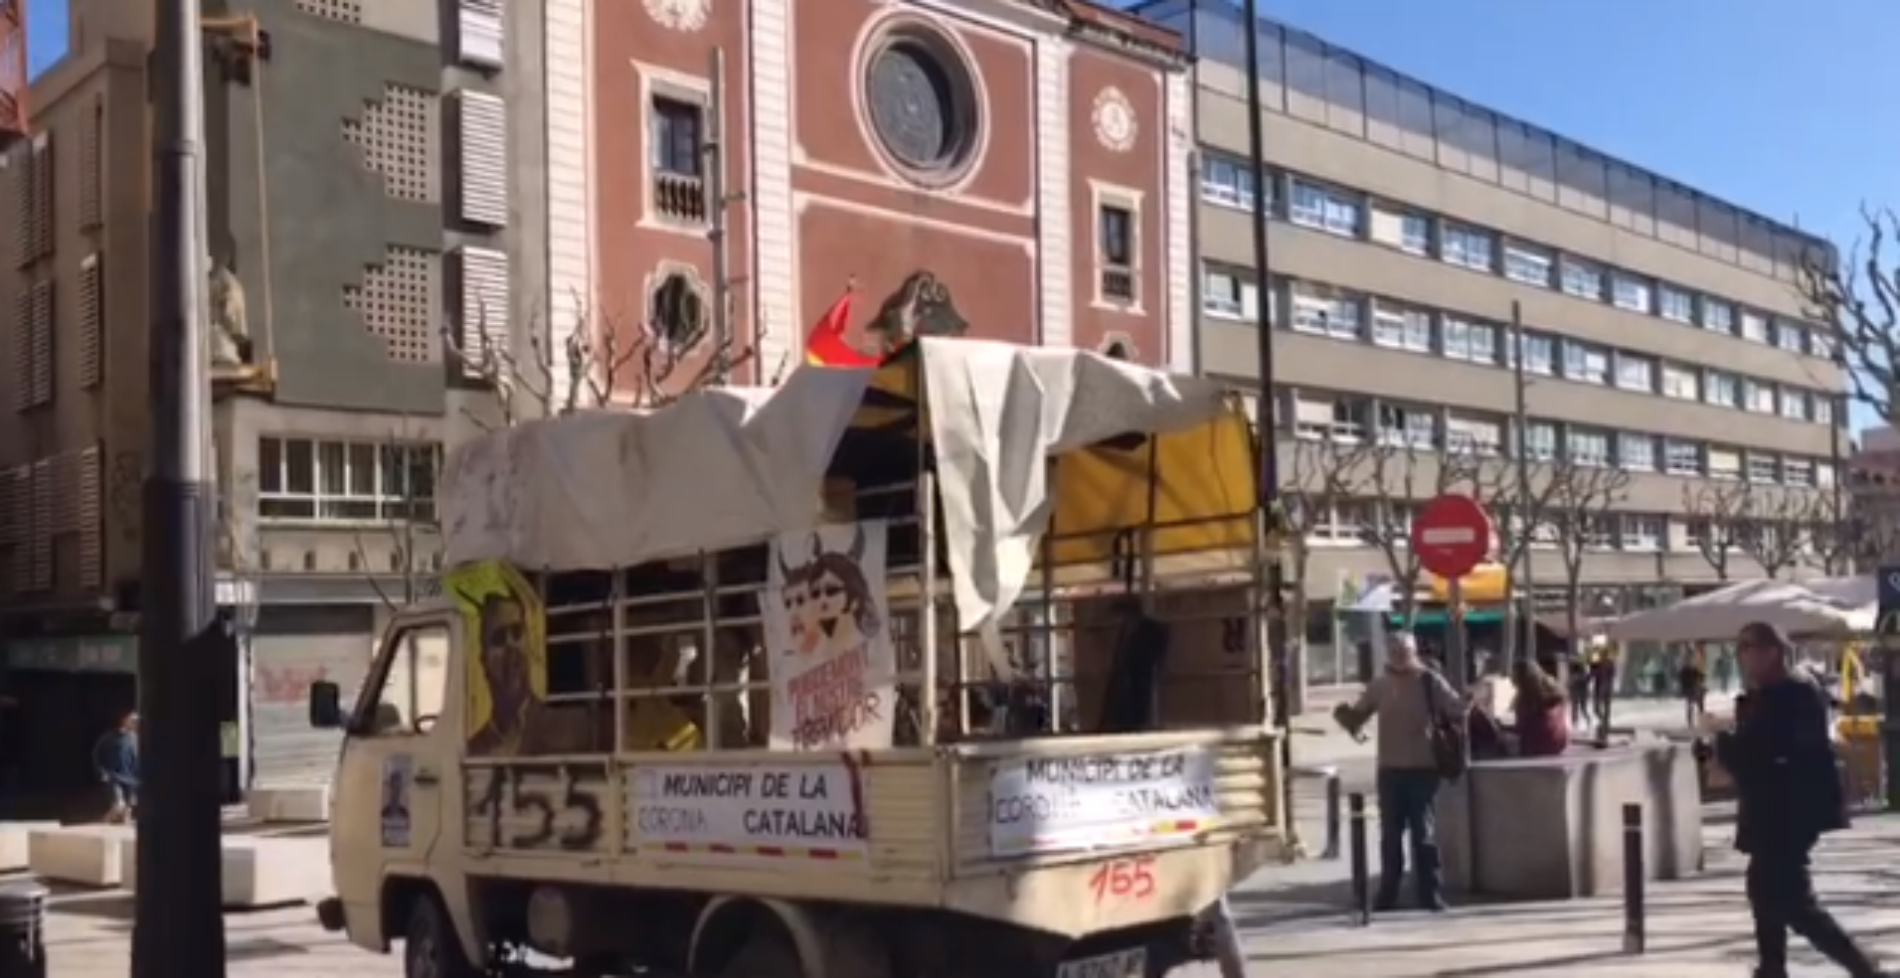 Un unionista provoca incidents amb una furgoneta al centre de Mataró